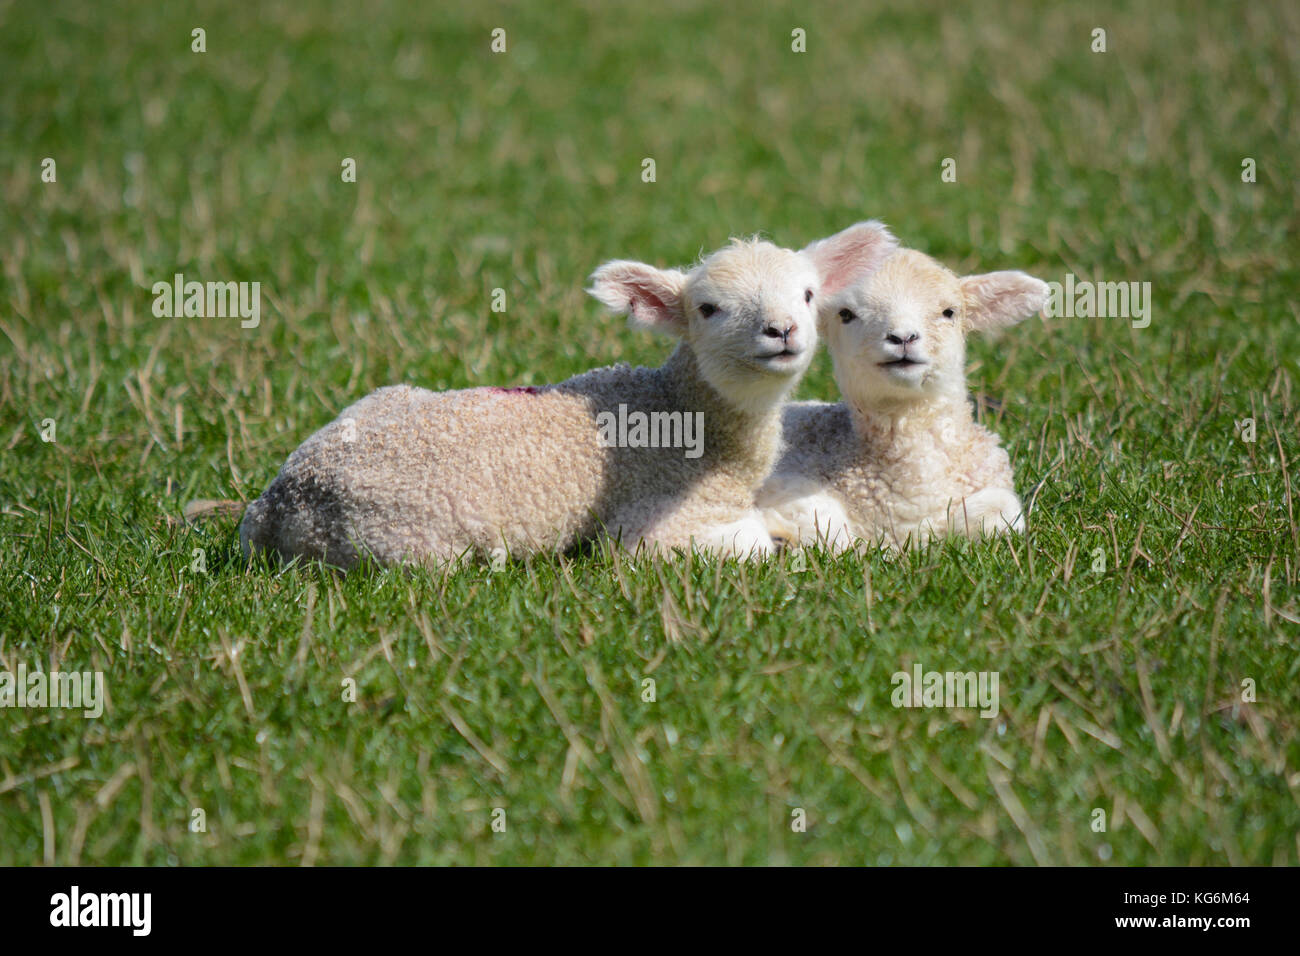 Deux lits jumeaux agneaux nouveau-né baby lying together dans un champ au printemps Banque D'Images